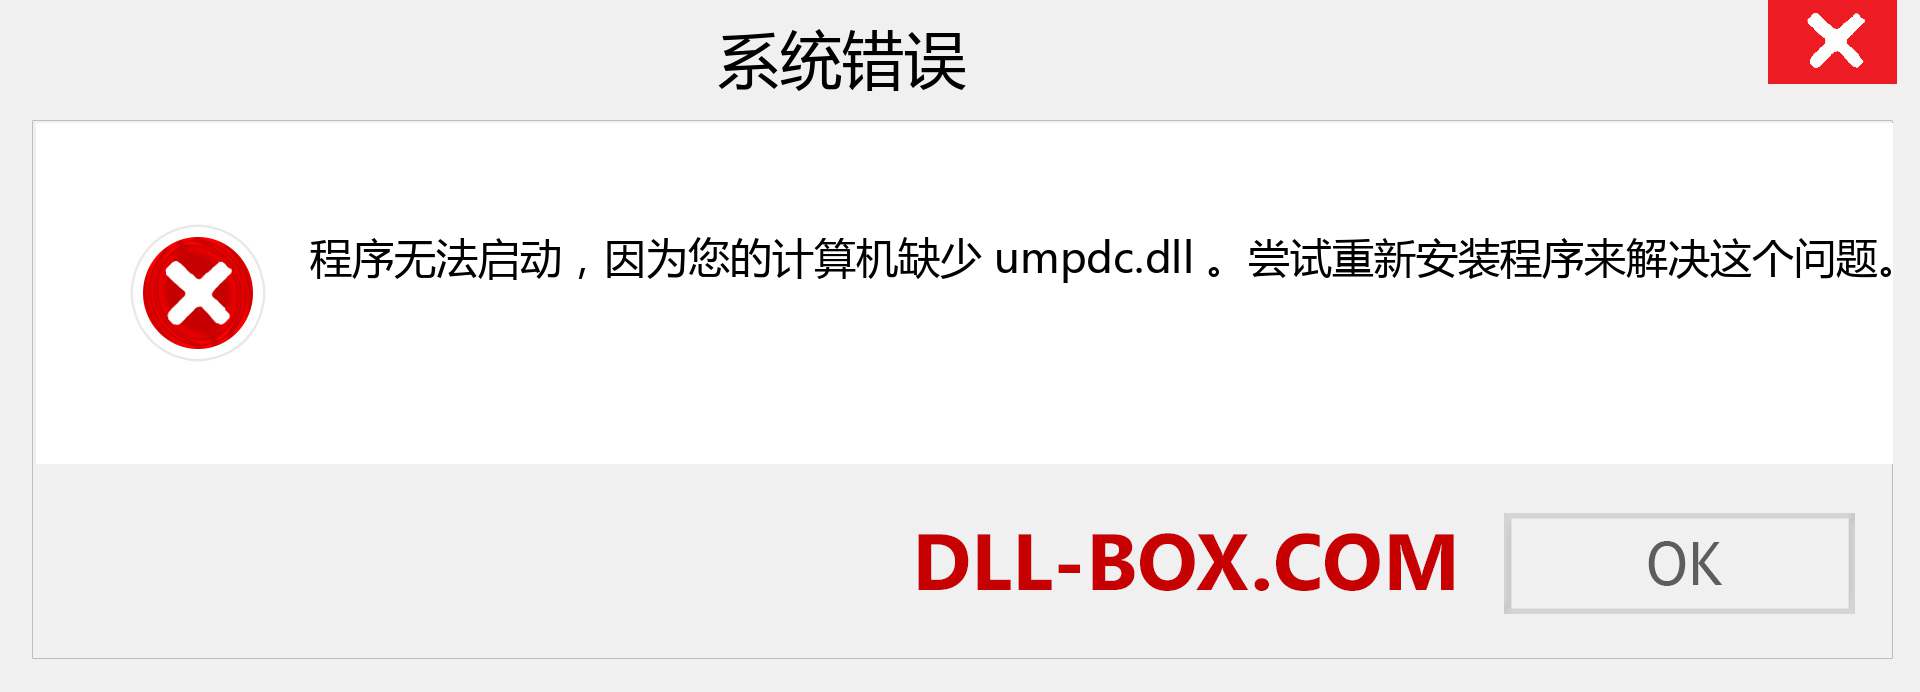 umpdc.dll 文件丢失？。 适用于 Windows 7、8、10 的下载 - 修复 Windows、照片、图像上的 umpdc dll 丢失错误